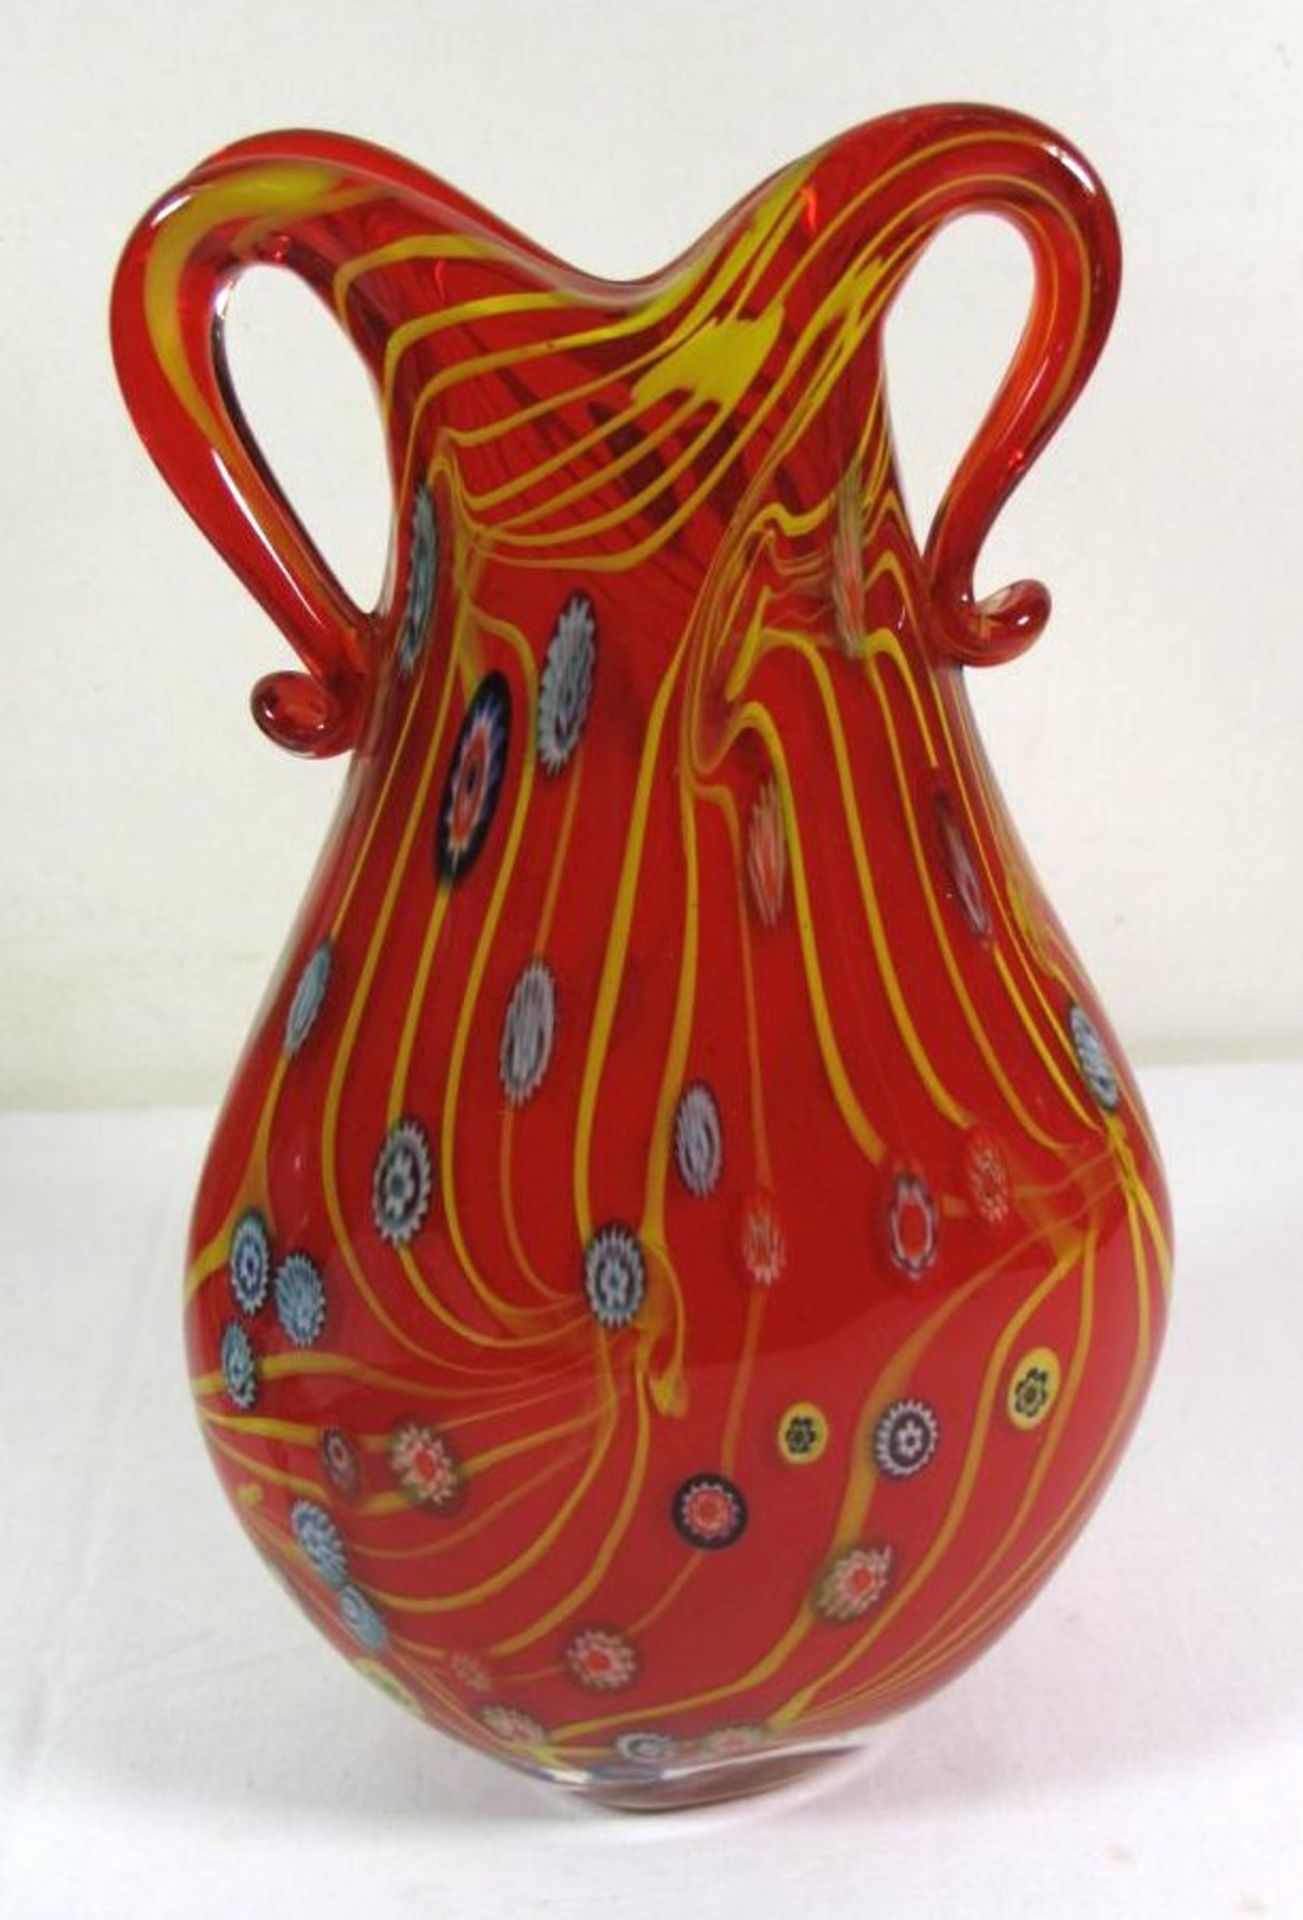 hohe Vase, wohl Murano, rotes Glas, gelbe Fadeneinschmelzugen und Murinnen, H-30cm. - Bild 2 aus 2